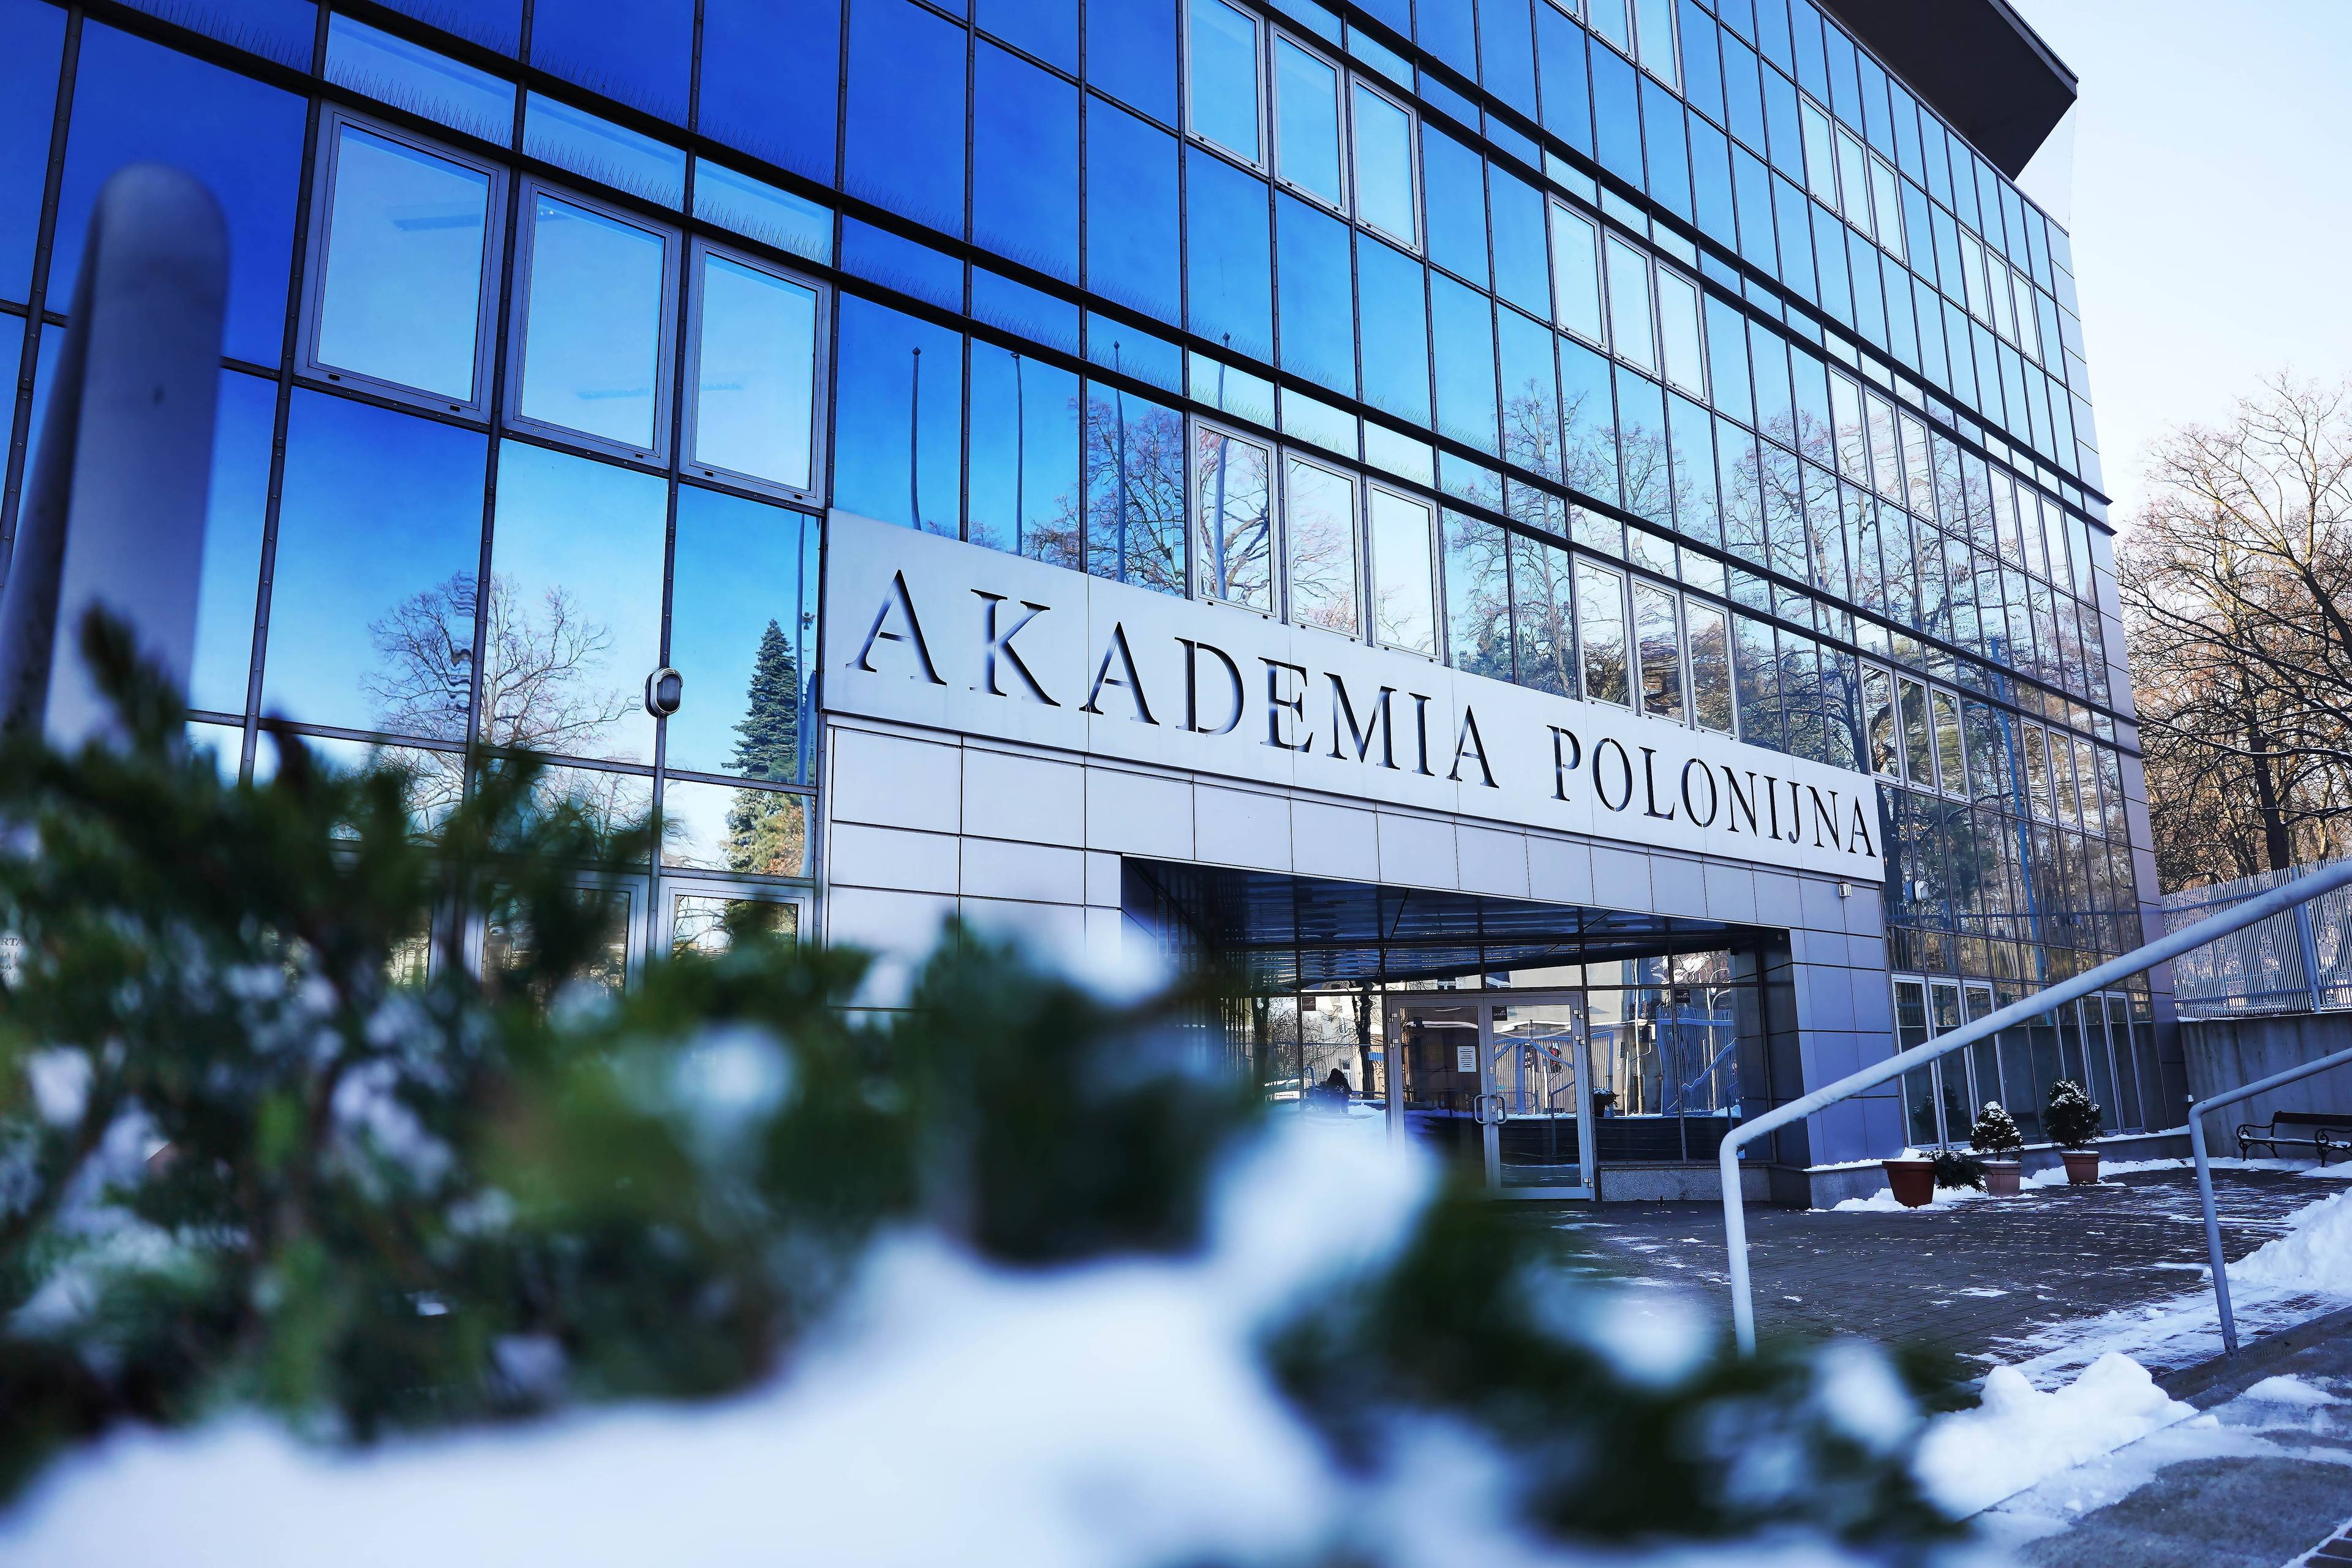 gmach akademii polonijnej